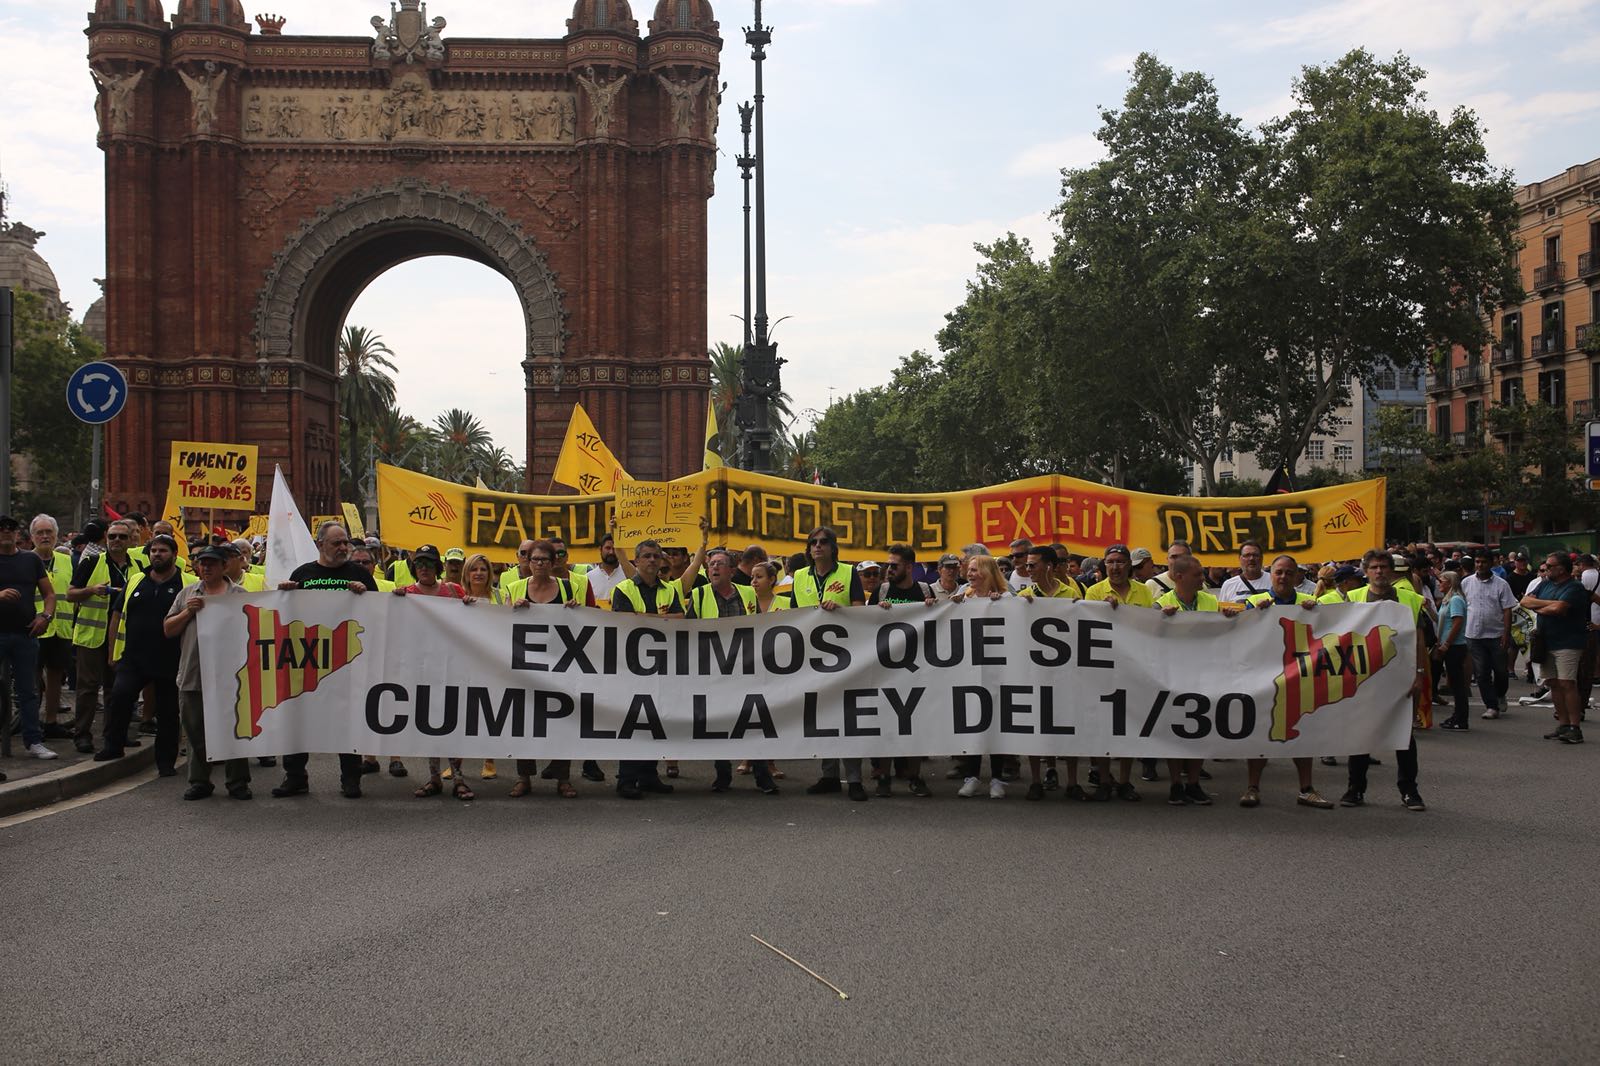 Estàs d'acord amb la vaga del sector del taxi a Barcelona?